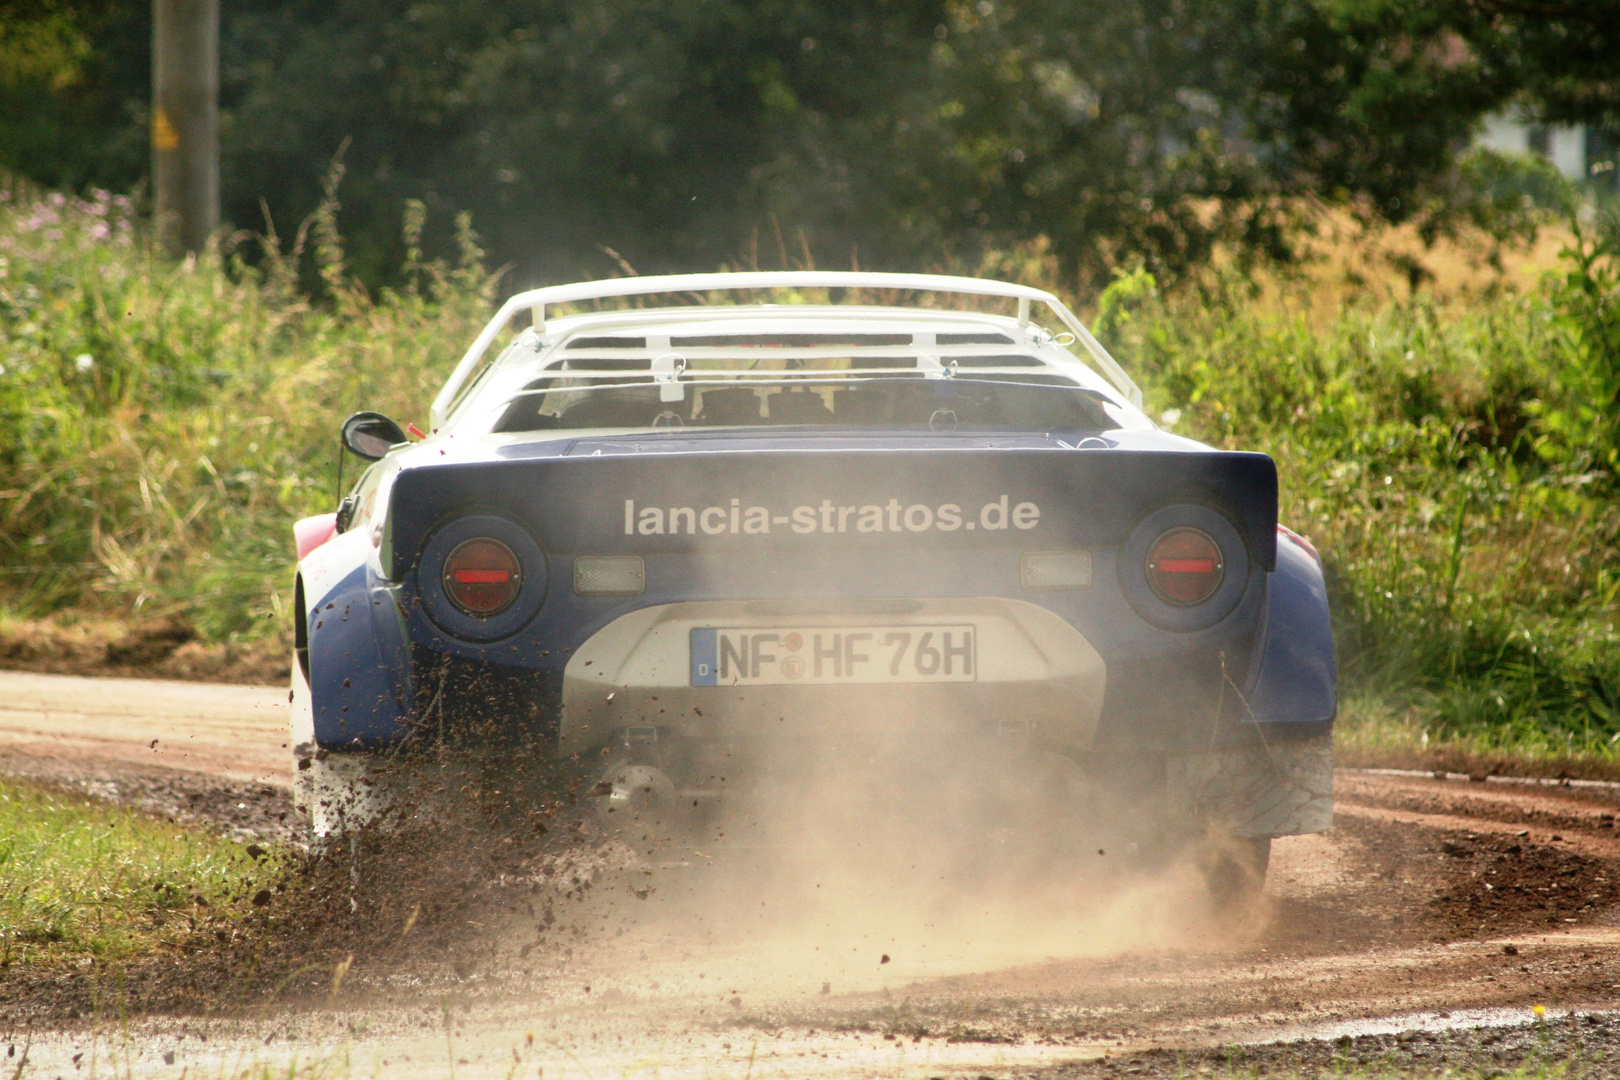 Lancia Stratos Action